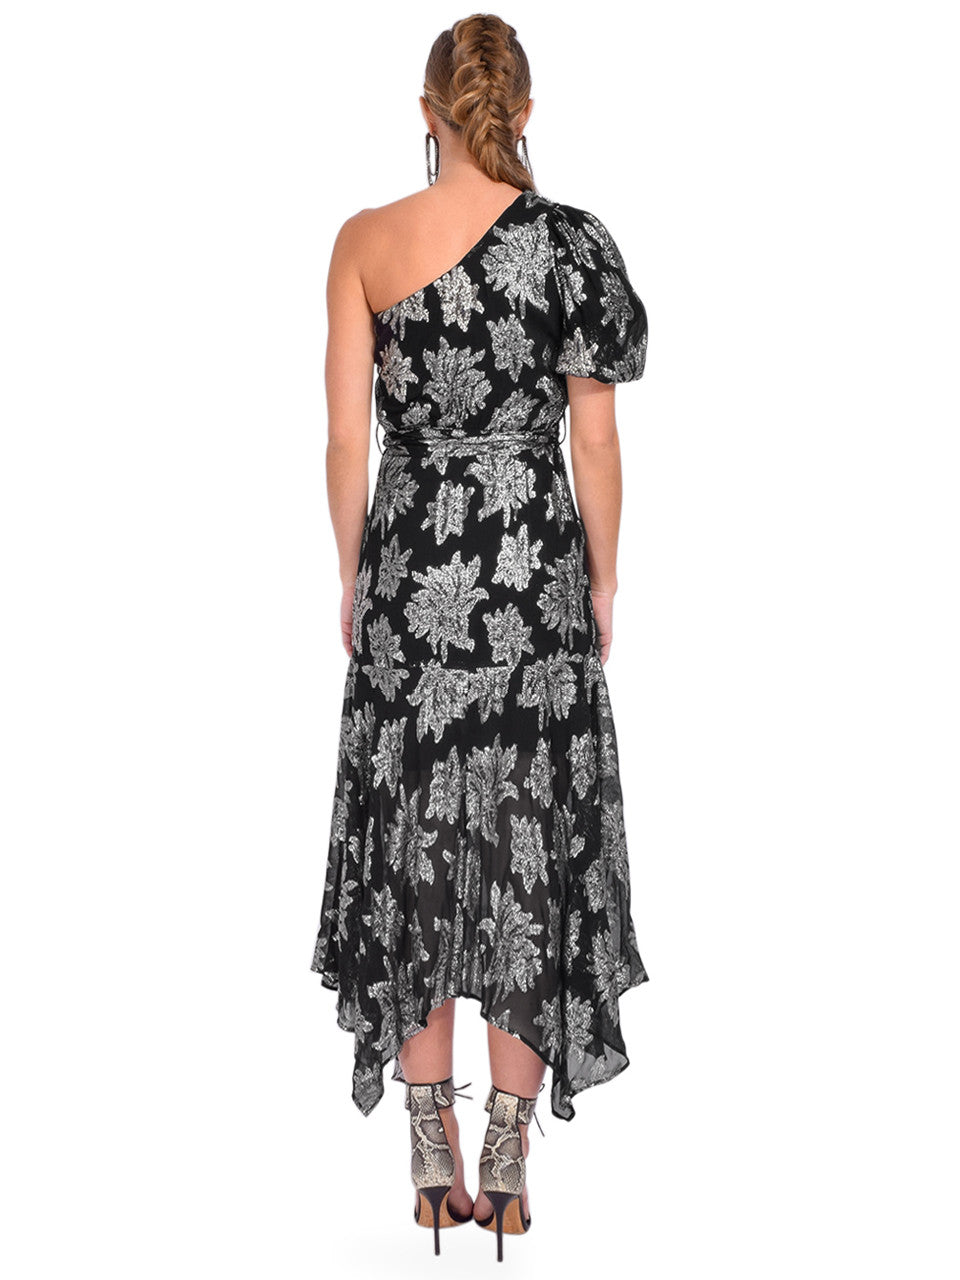 Lorna Jacquard Print Dress